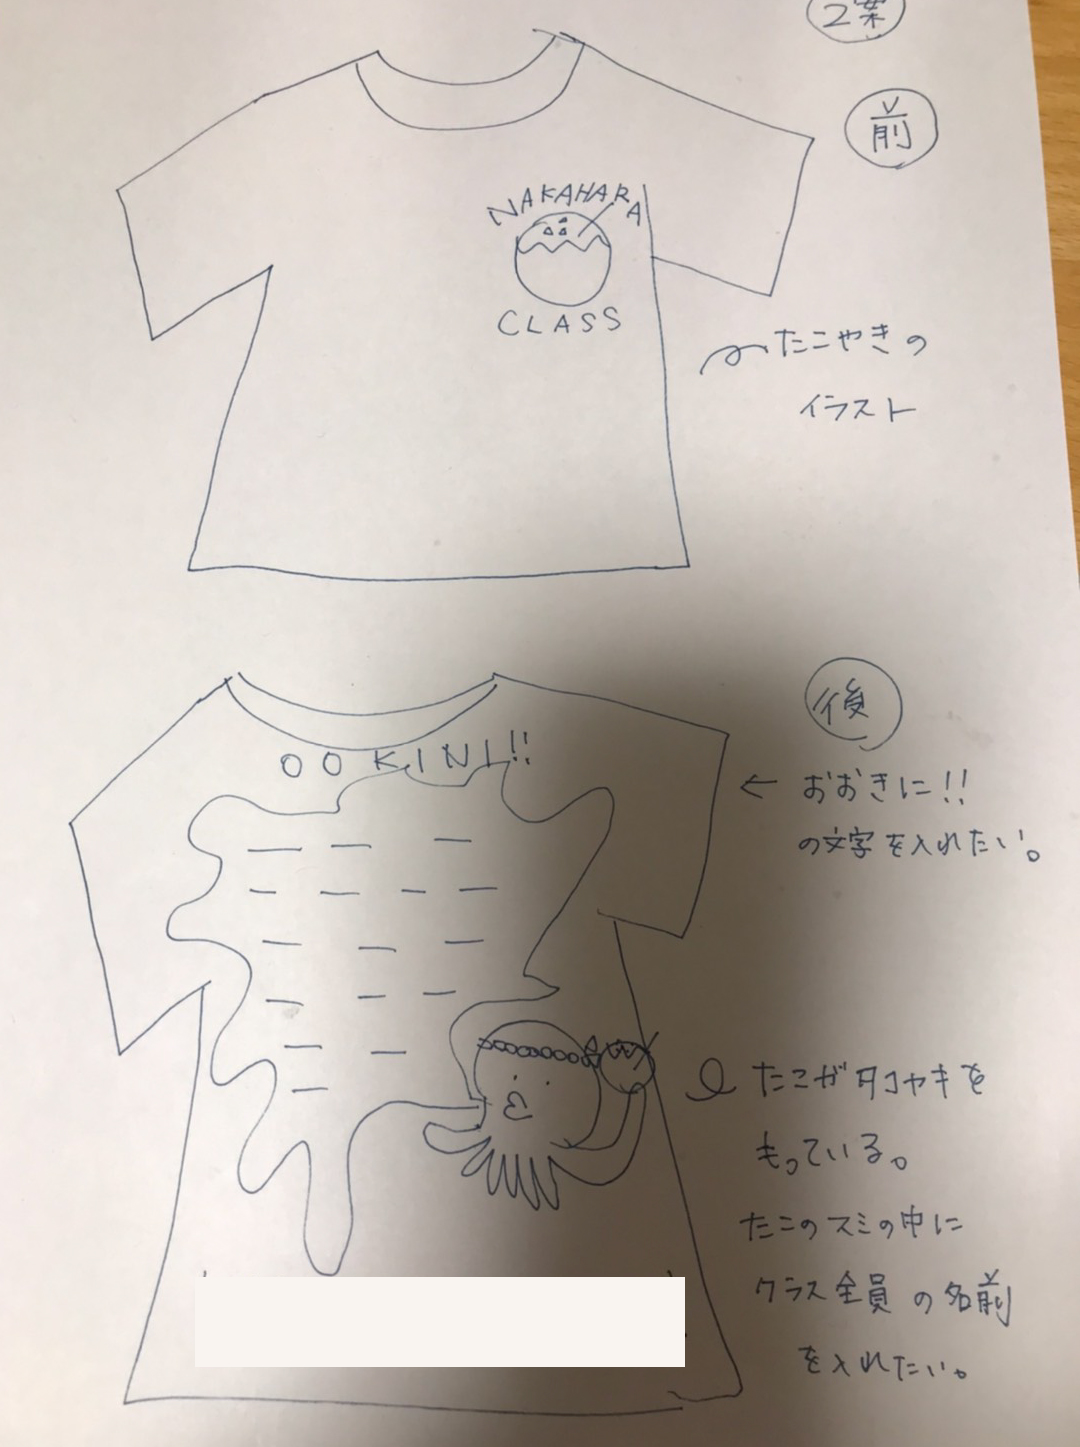 北海道m様 小学6年生運動会クラスtシャツ 全員の名前 クラスtシャツ オリジナルtシャツを早い激安作成プリントメディア